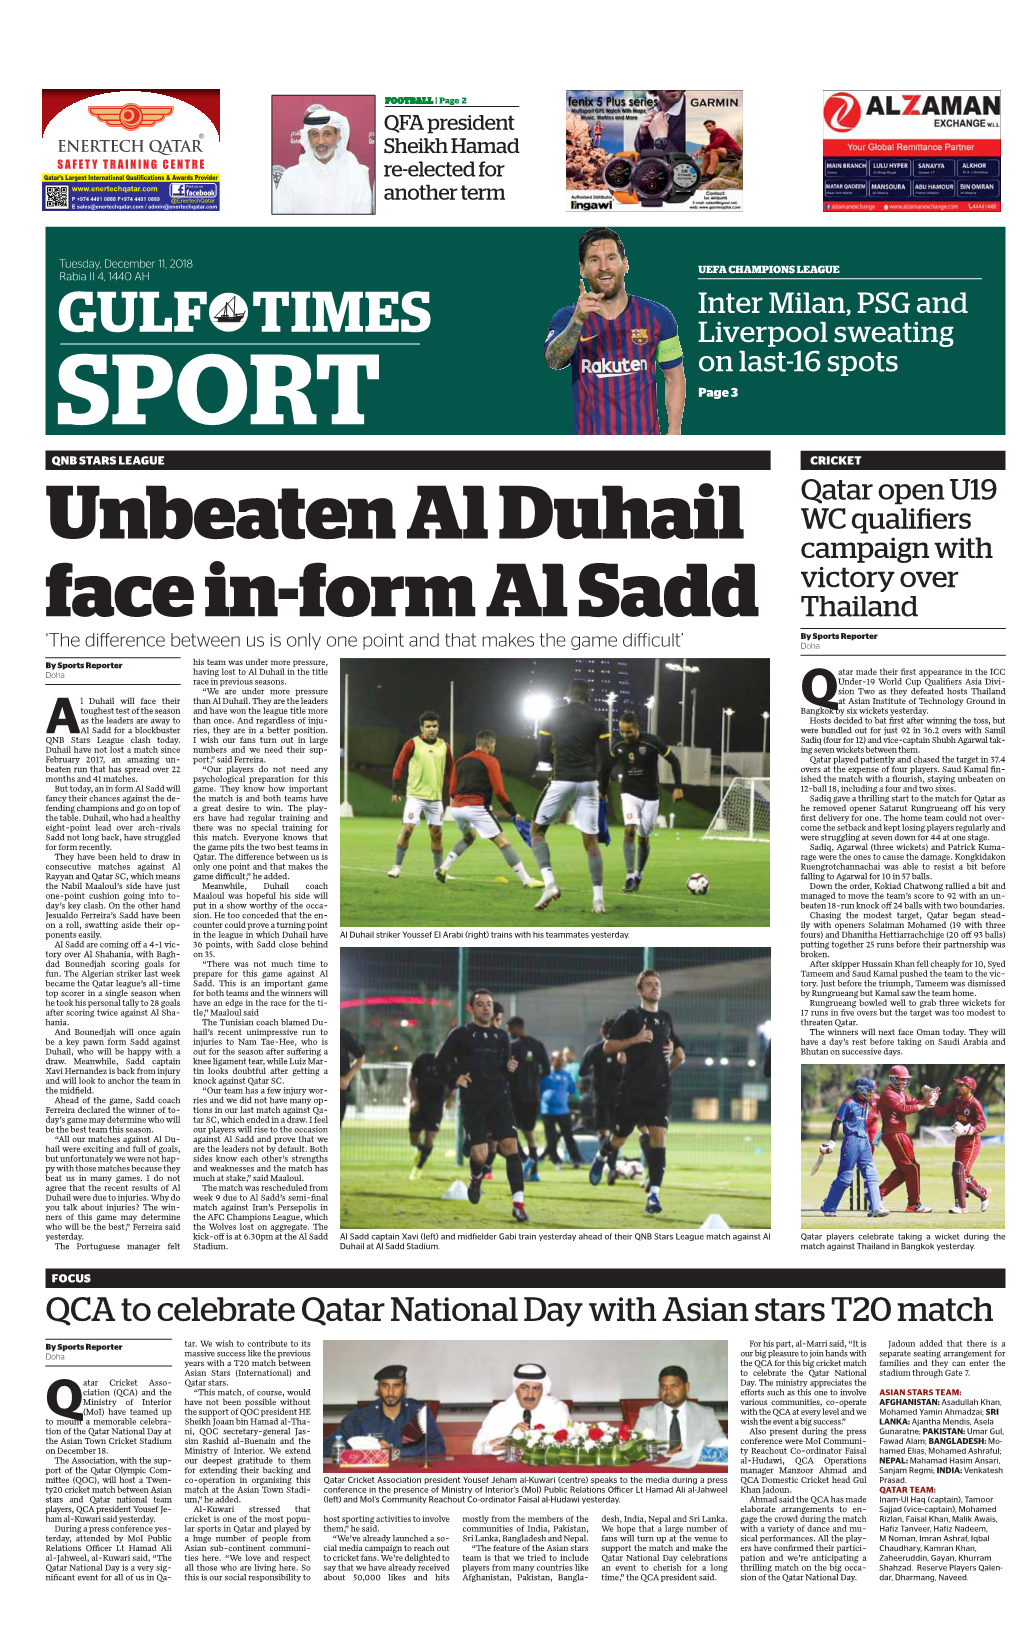 Unbeaten Al Duhail Face In-Form Al Sadd